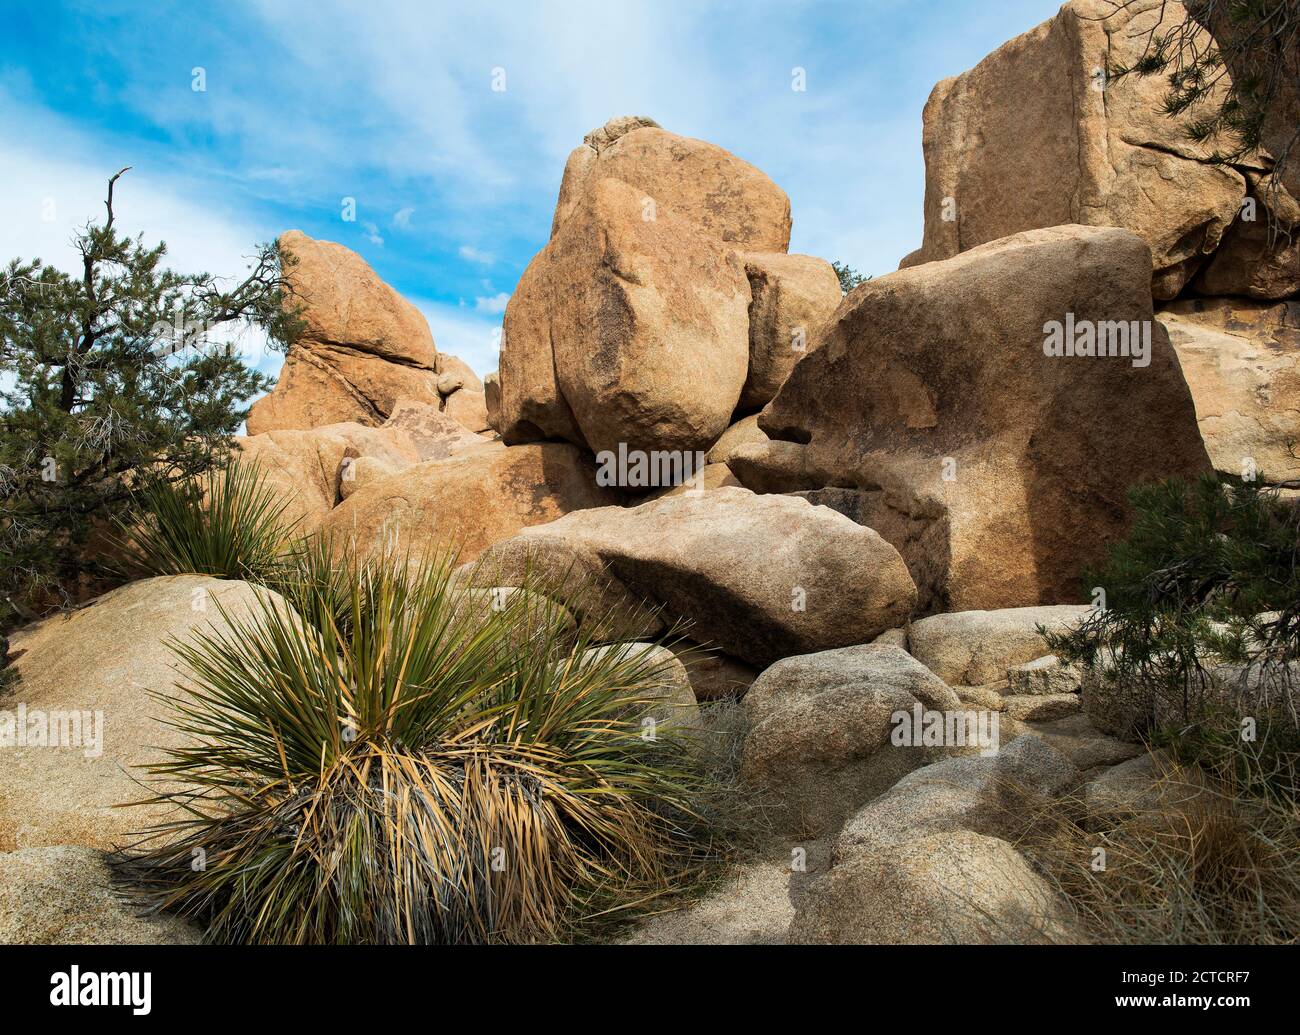 Paysage du désert avec Rock formation, parc national de Joshua Tree, Californie Banque D'Images